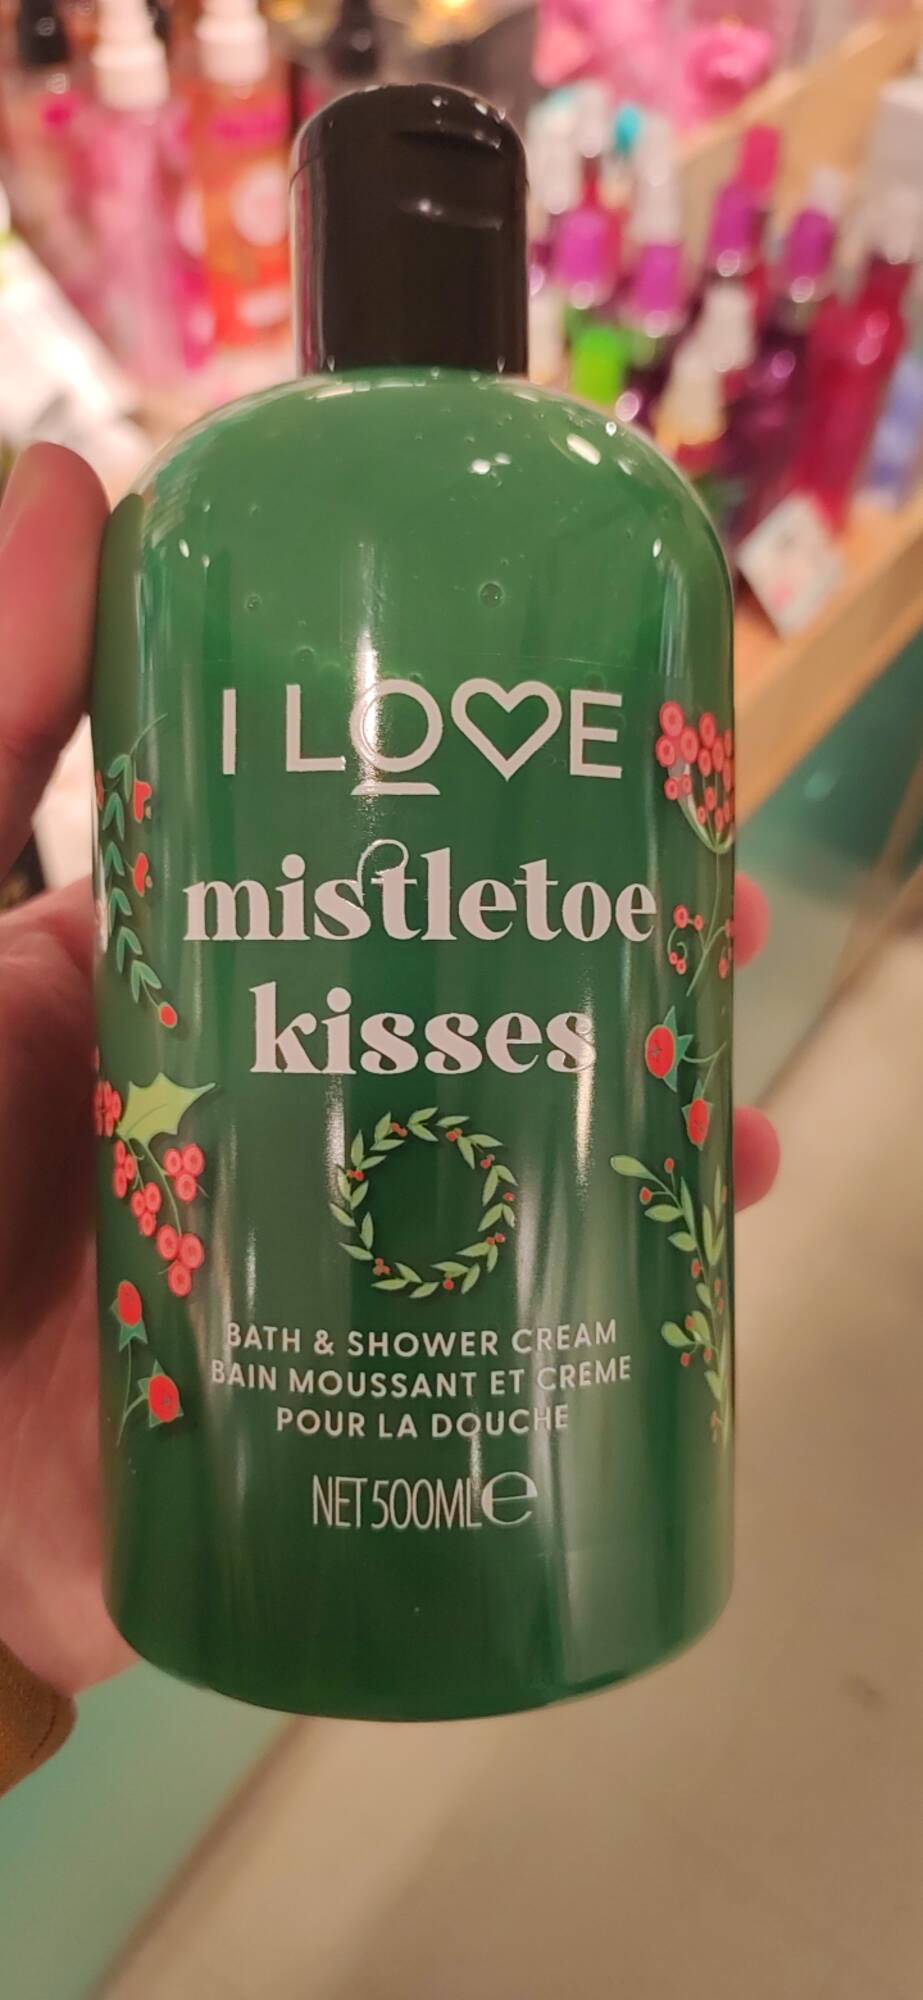 I LOVE... - Mistletoe kisses - Bain moussant et crème pour la douche